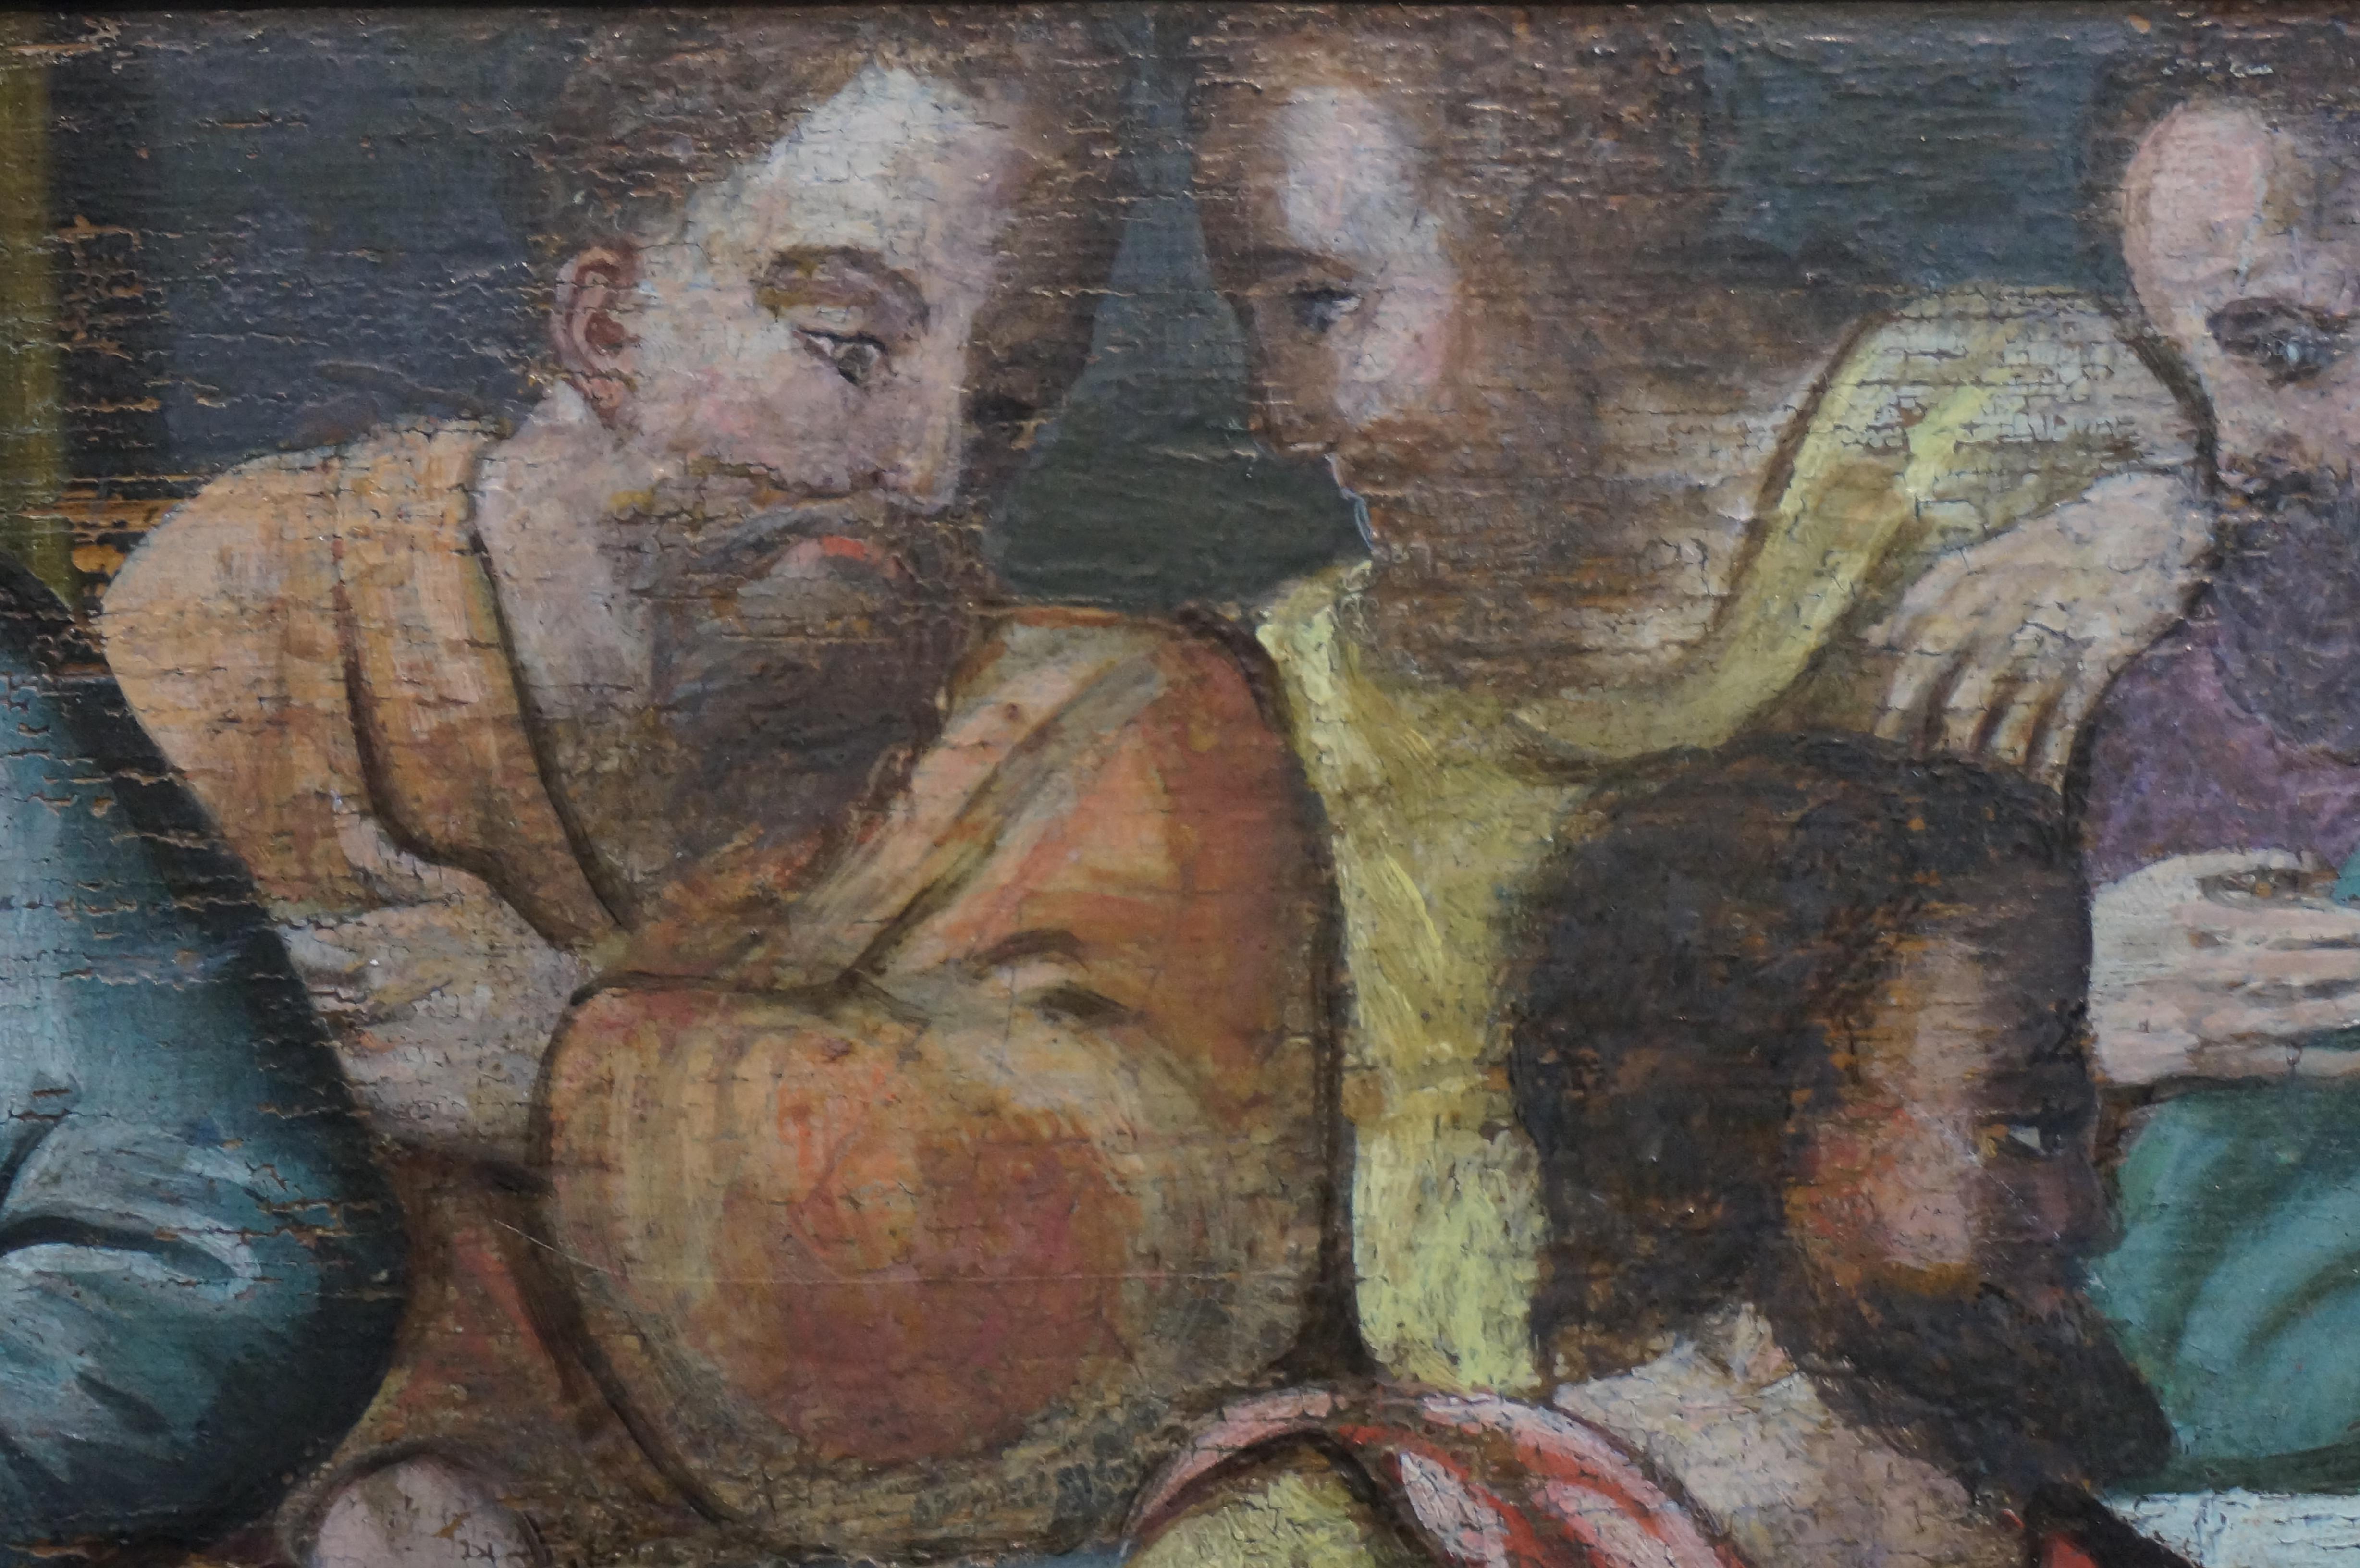 Anrique oil painting, Last Supper, German school, Renaissance, Late 16th c. 5